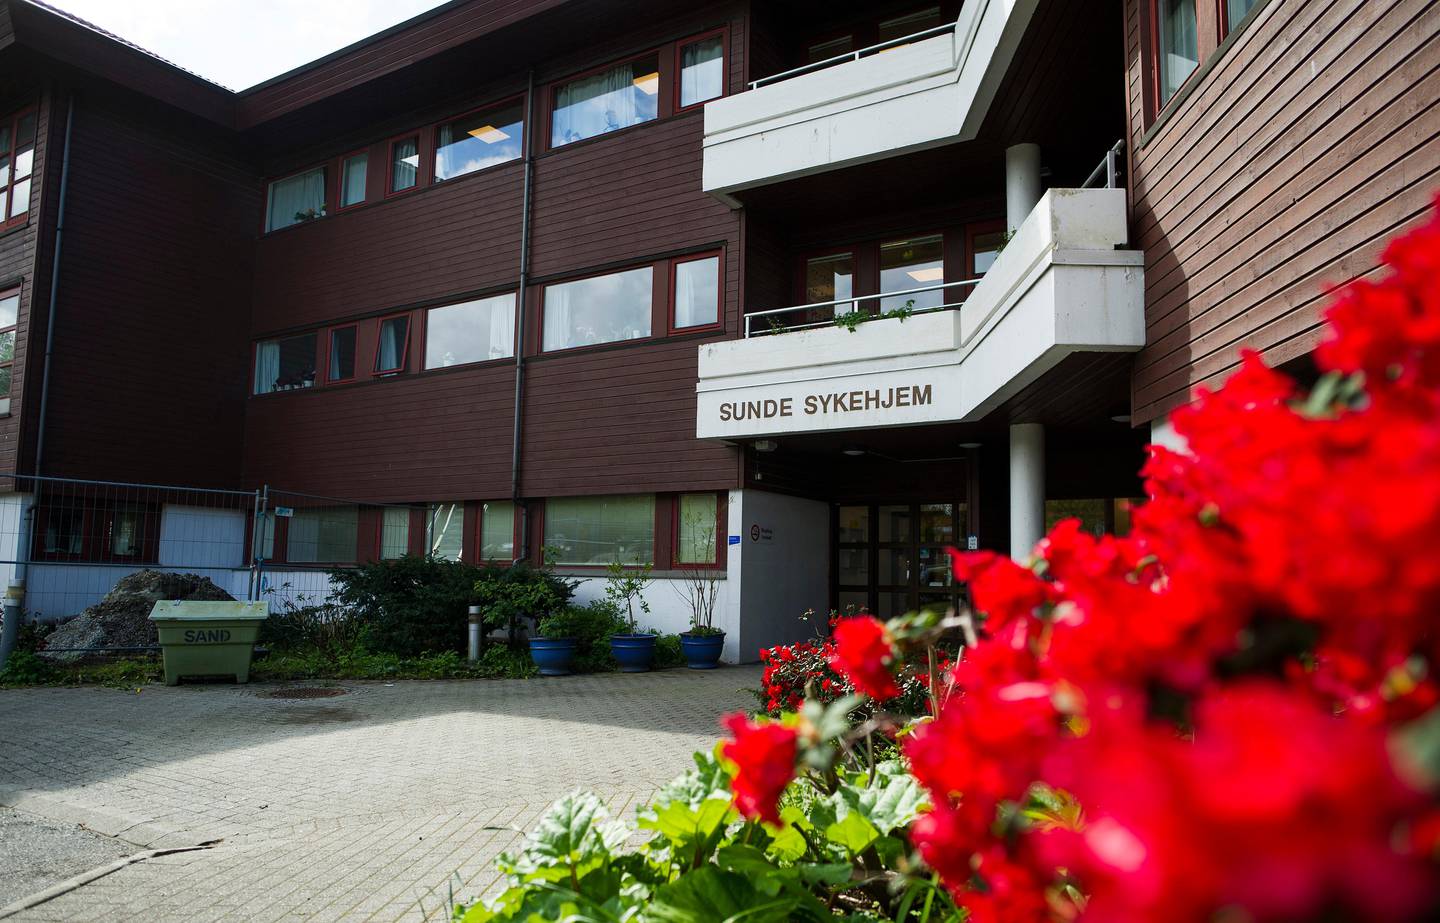 Kan ansettelse av husassistenter redusere sykefraværet hos ansatte ved sykehjem? To sykehjem i Stavanger kan bli prøvekaniner i nytt prosjekt.

Sunde sykehjem er ett av dem.

sykehjem eldreomsorg eldresenter eldrebølgen